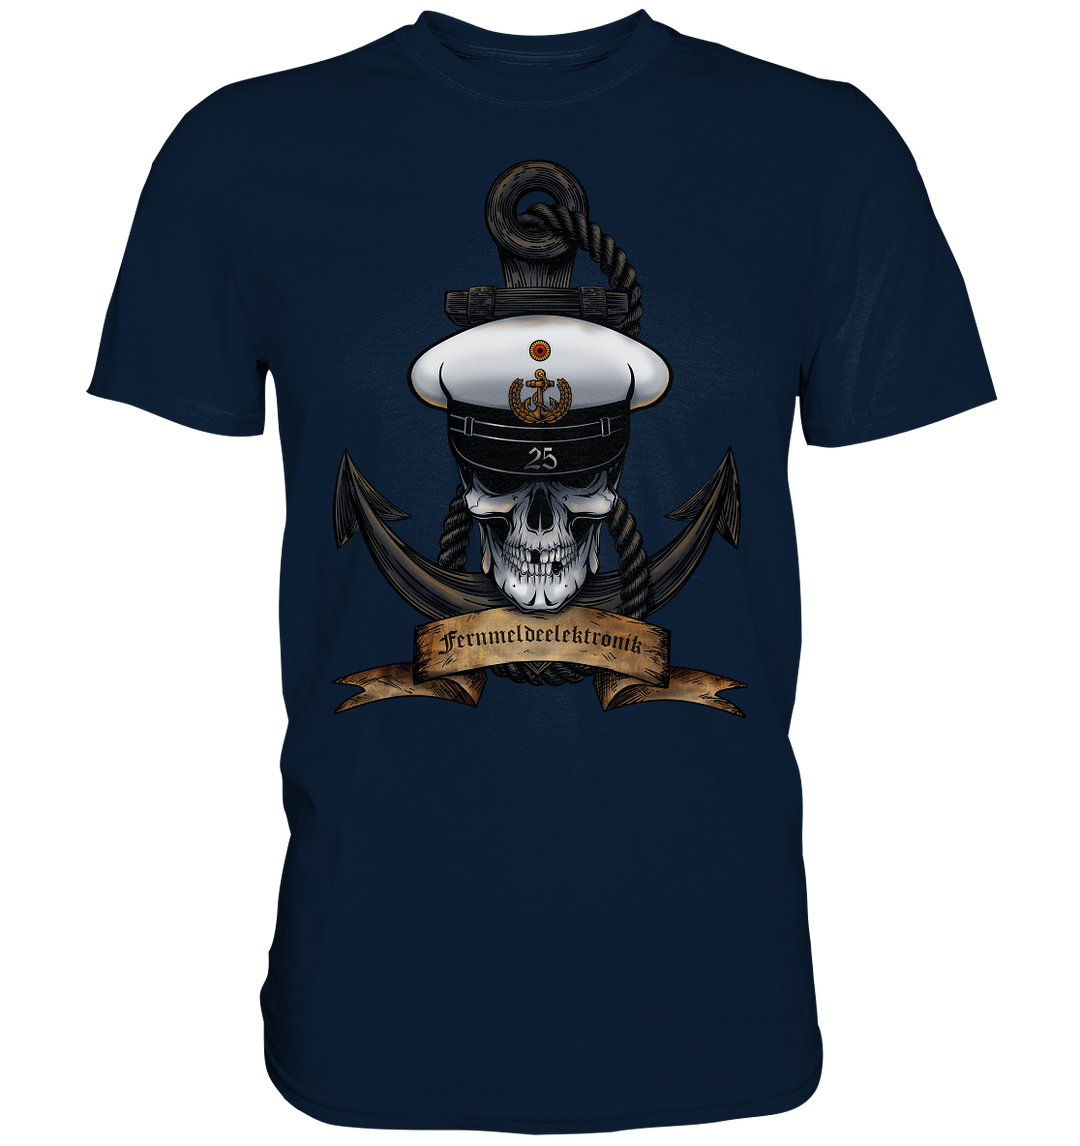 "Marine 25 - Fernmeldeelektronik" - Premium Shirt